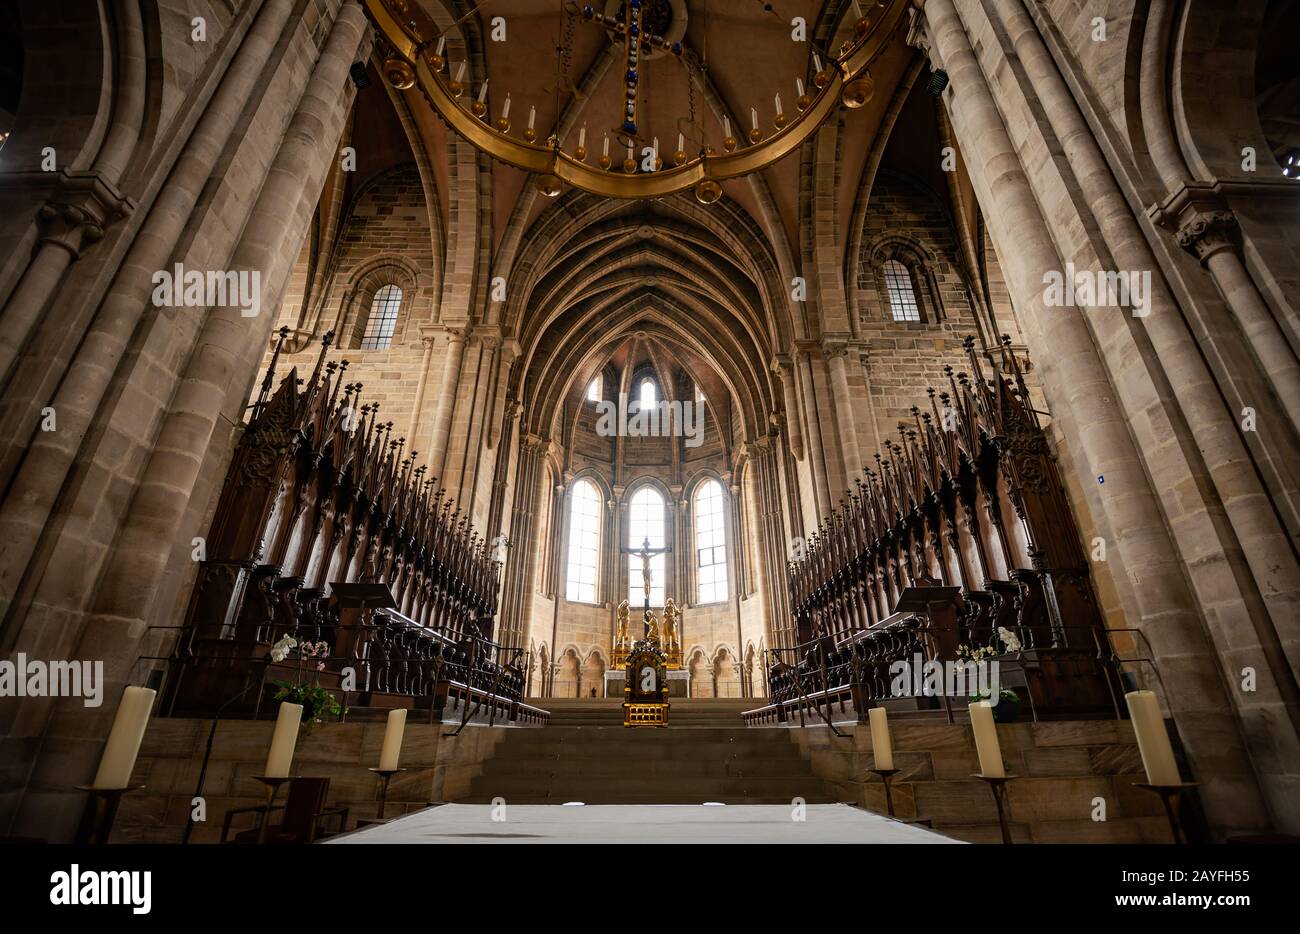 Intérieur de la grande cathédrale en Allemagne, Europe. Ancienne architecture européenne, voyages et tourisme. Banque D'Images